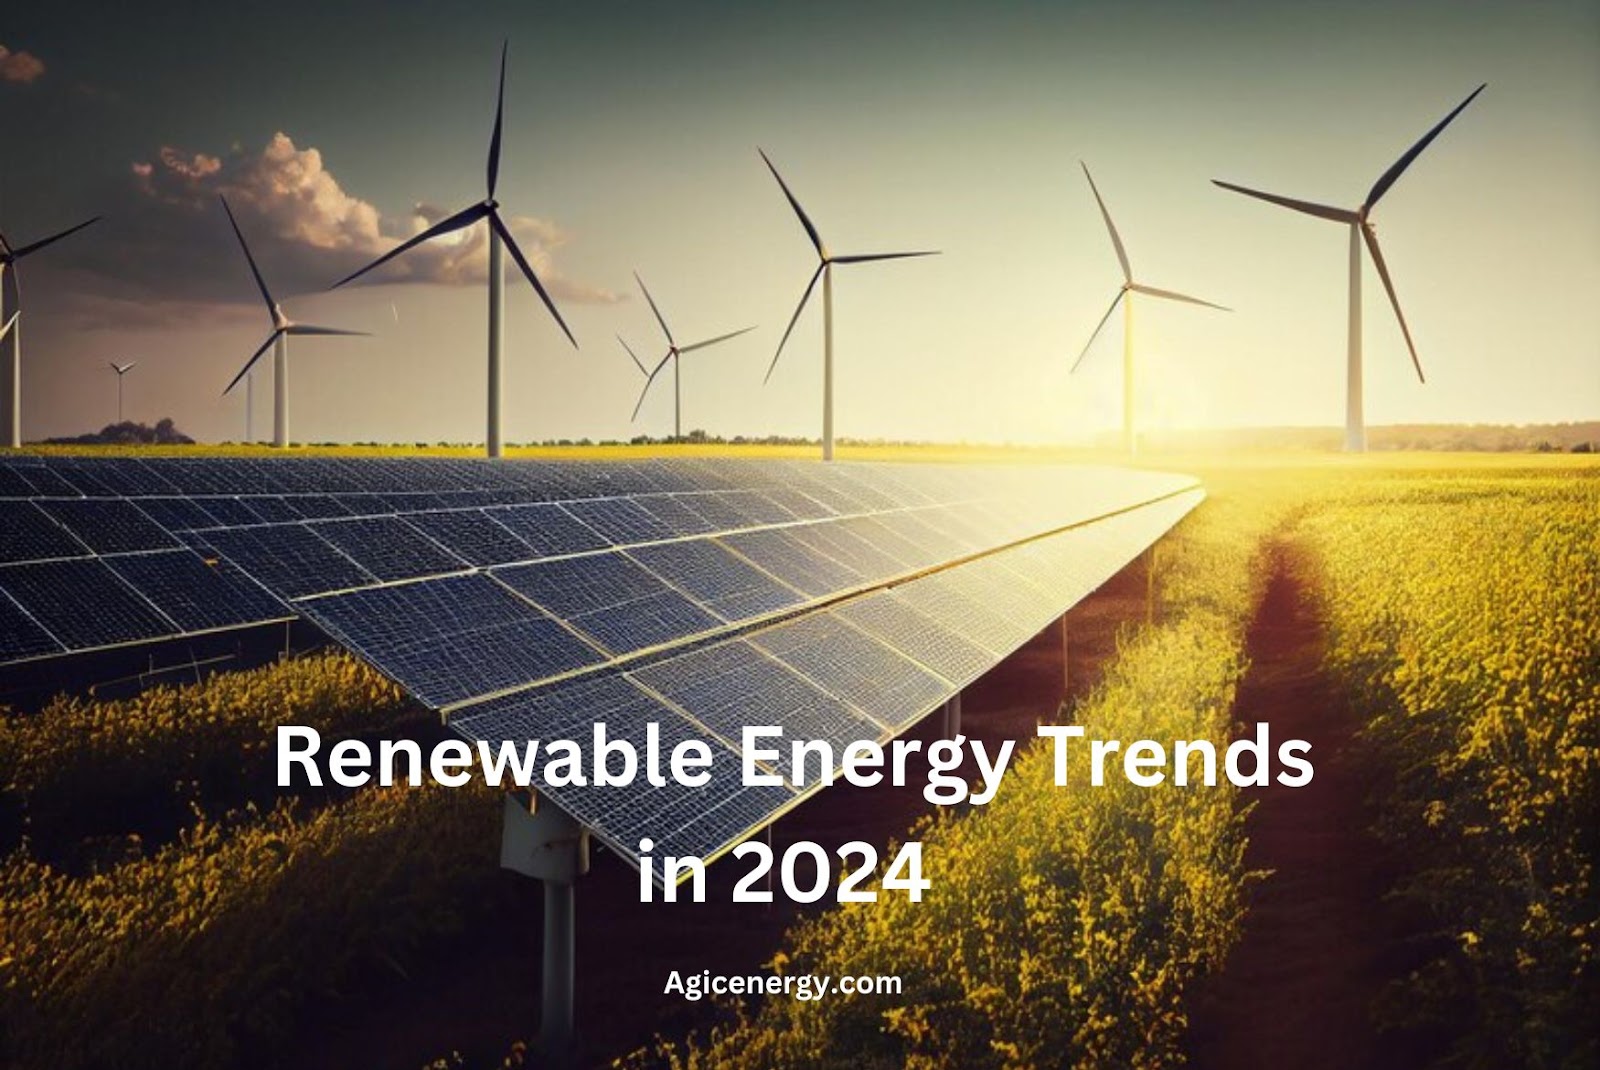 The Top Renewable Energy Trends in 2024